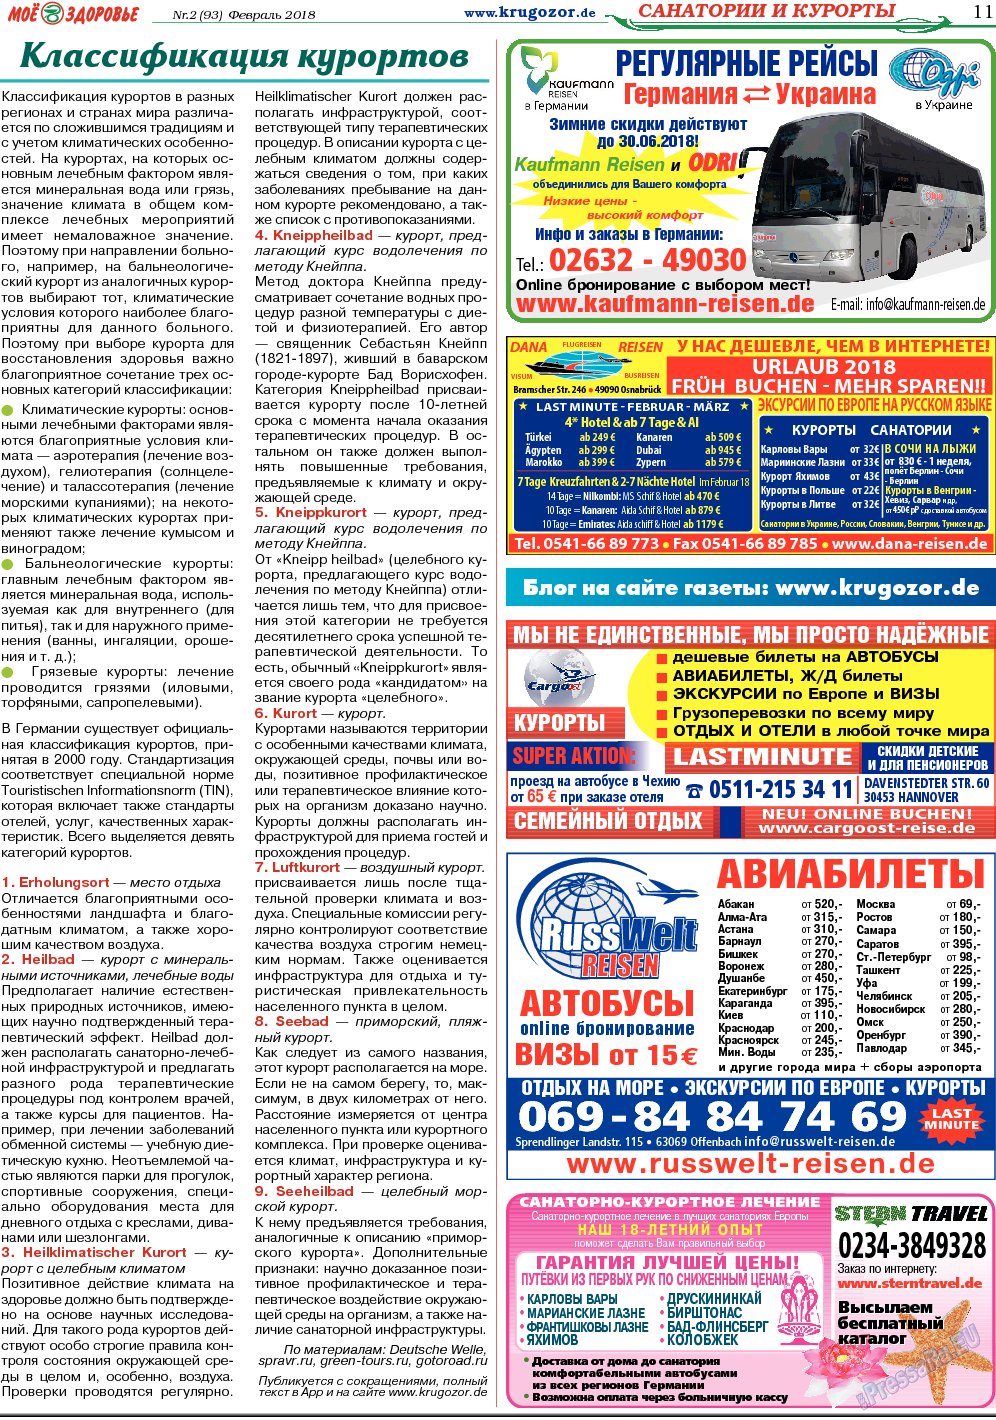 Кругозор, газета. 2018 №2 стр.11